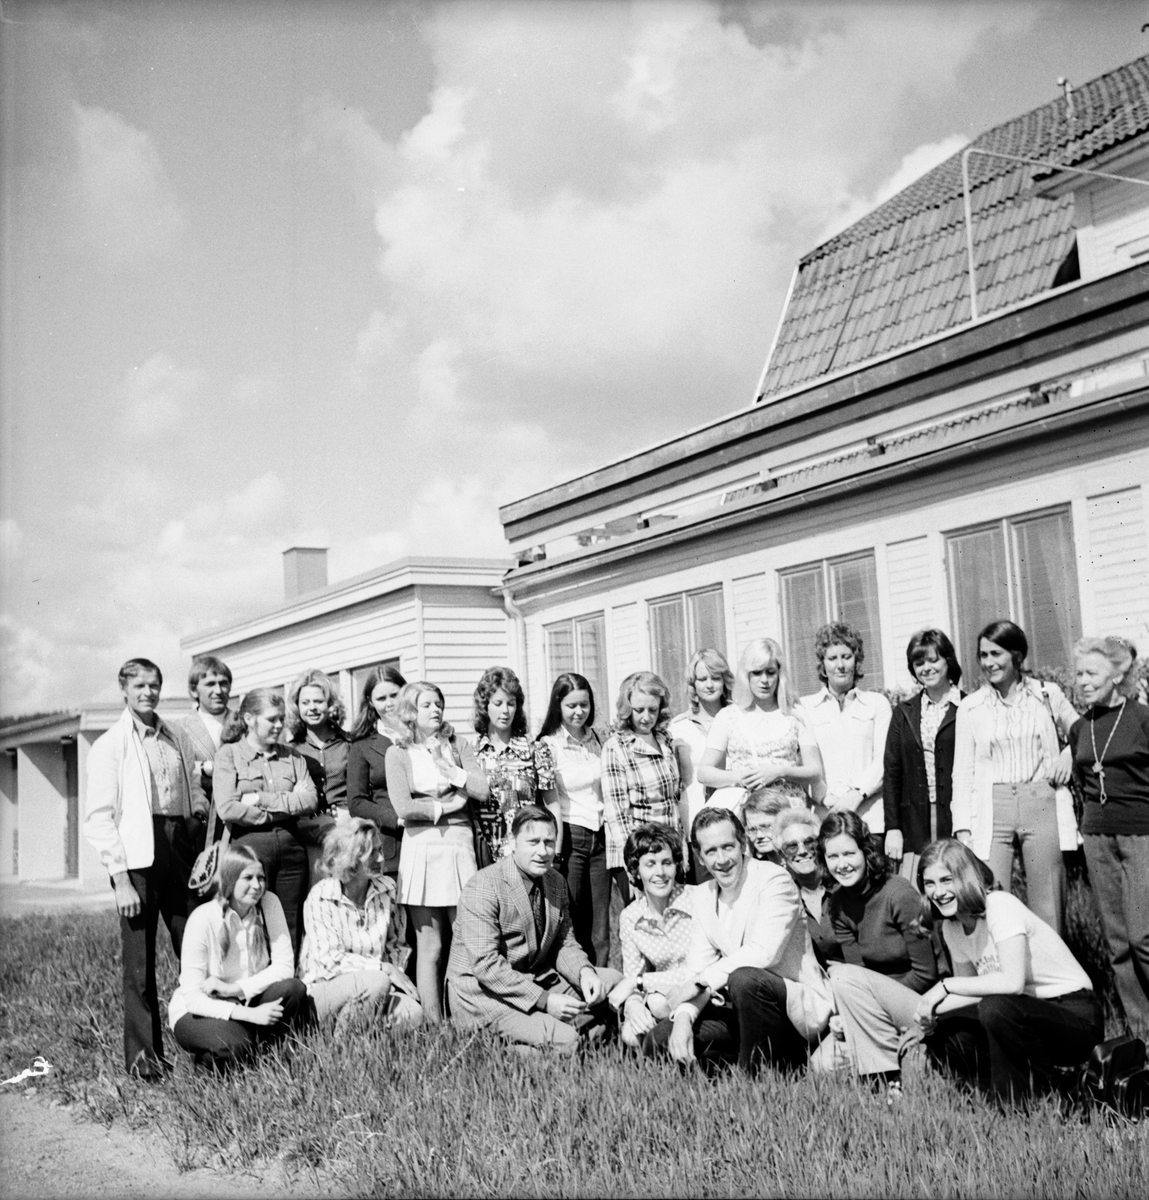 Hembygdsförbundets årsmöte i Valbo
Juni 1972